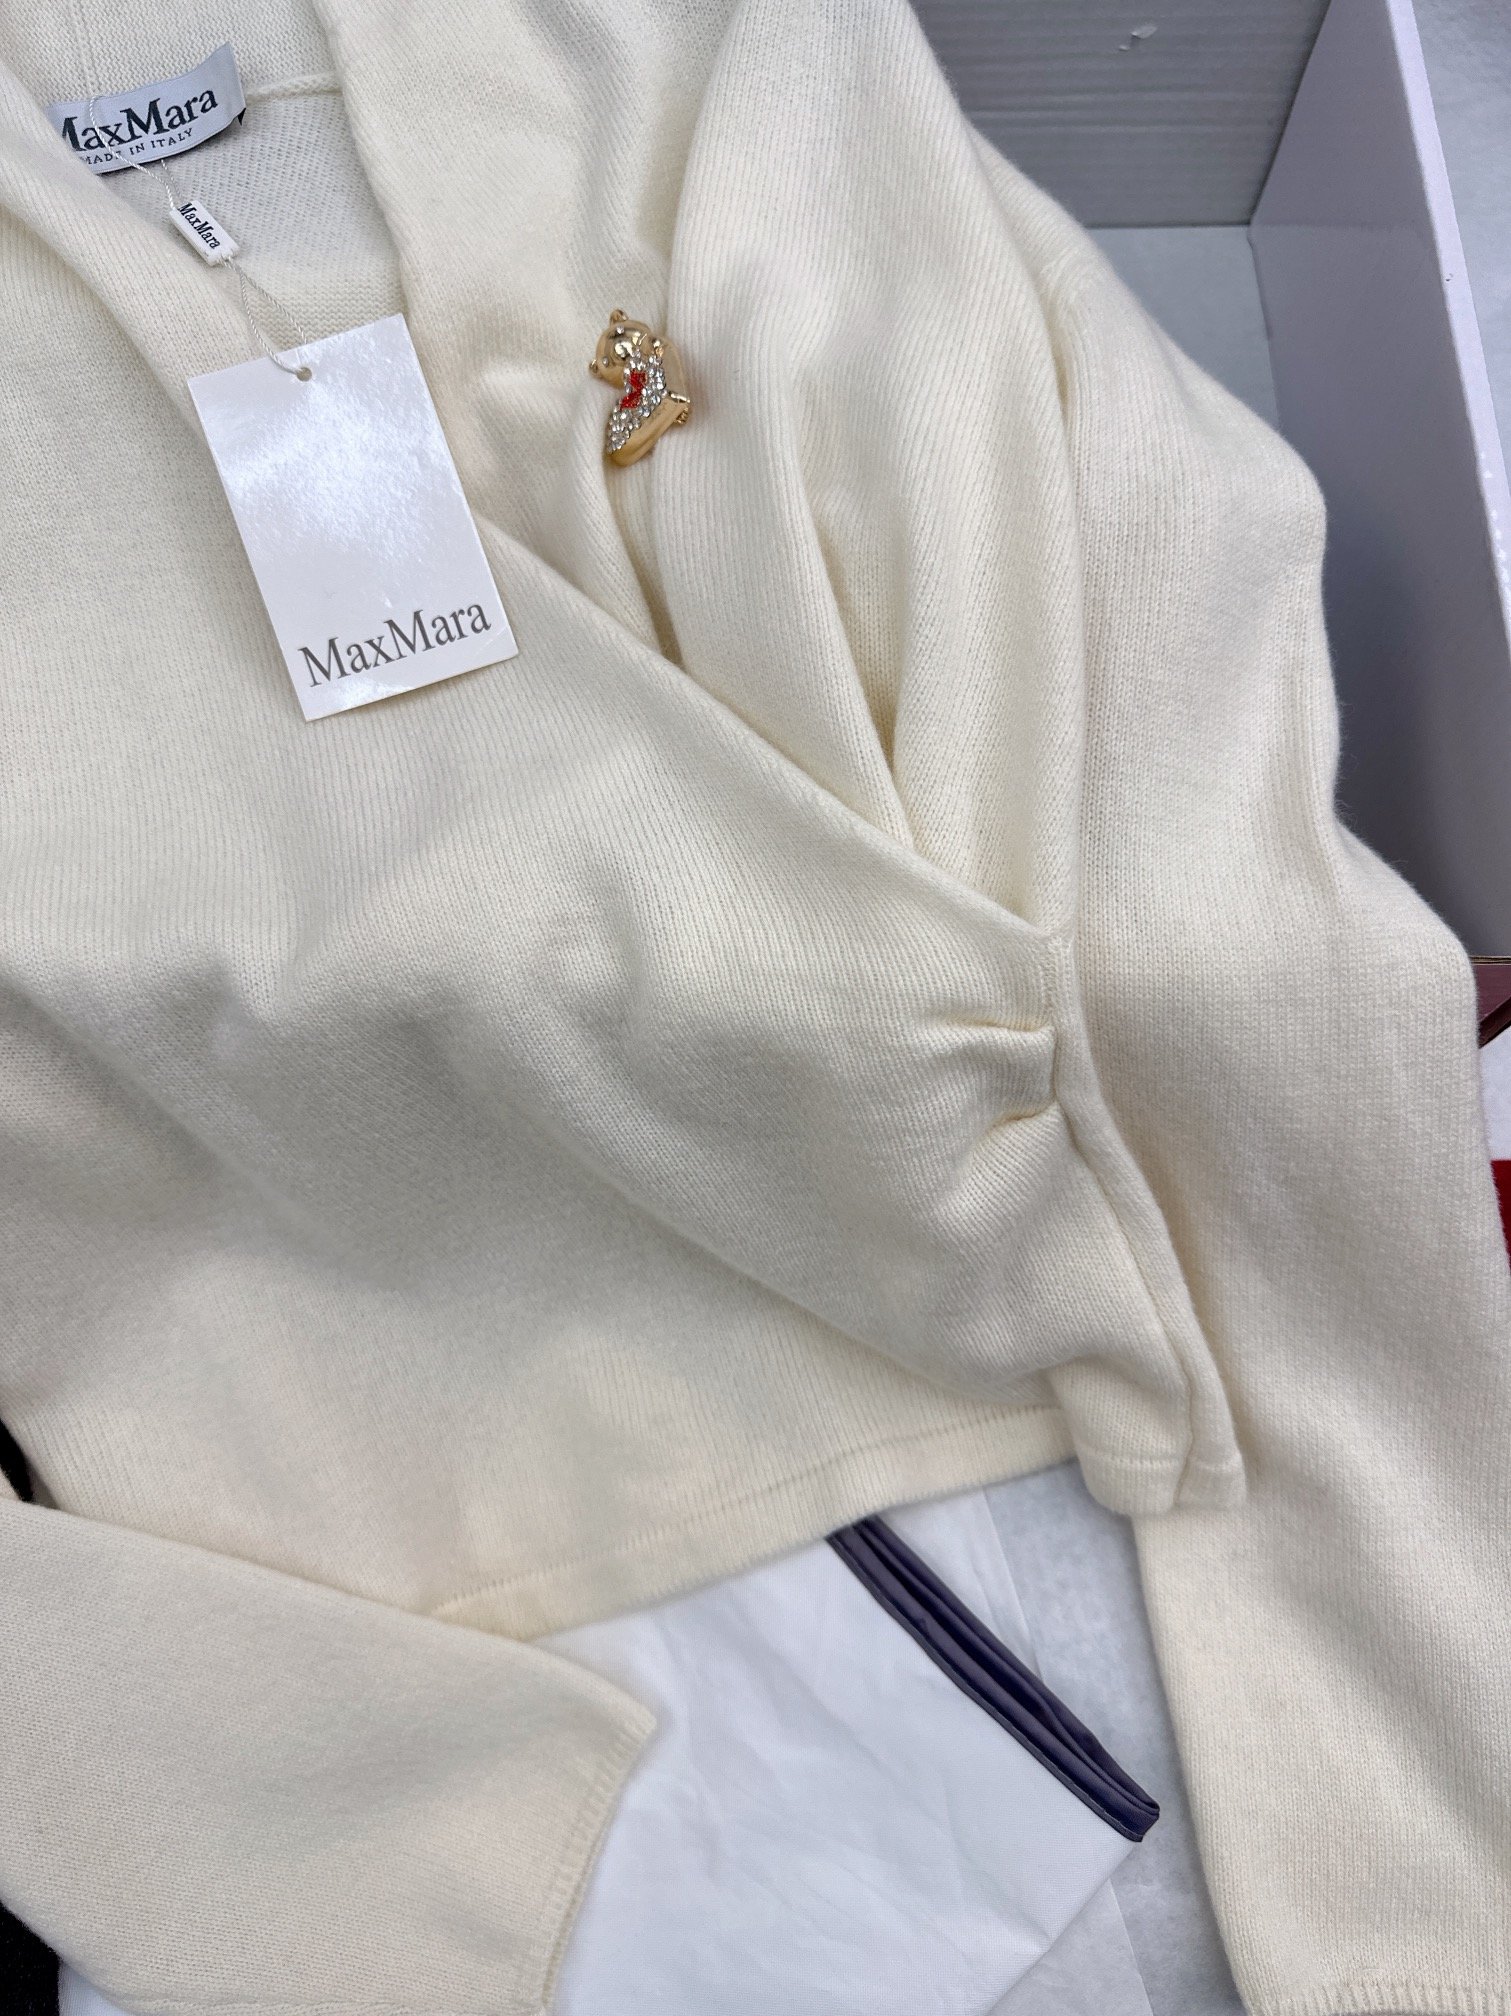 独家首发Max24Ss早春最新款名媛淑女气质针织打底衫V领收腰系列高颜值最日常的基础系列人手必备的百搭款